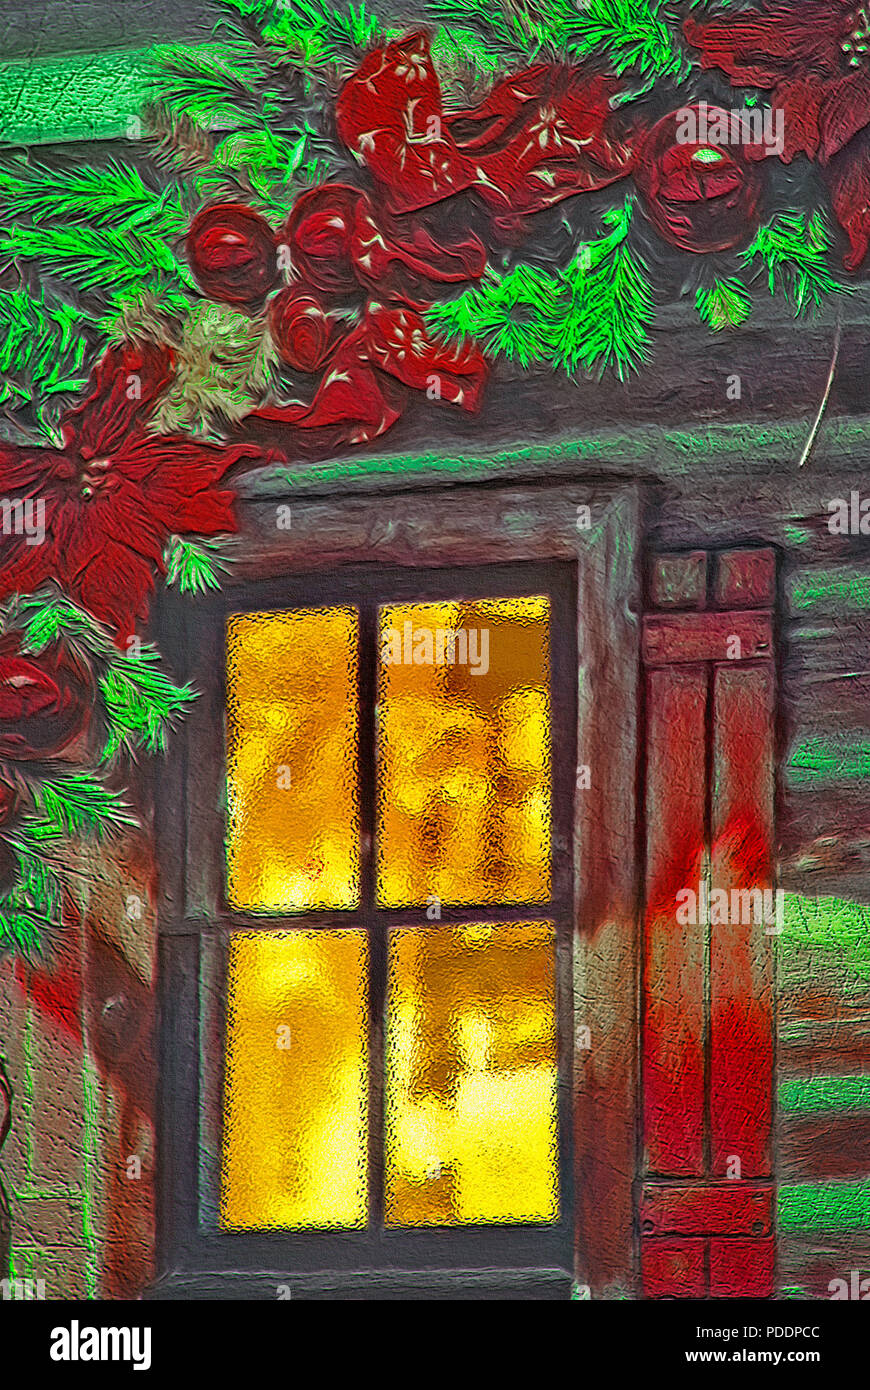 Un vecchio edificio di stile ha una luce calda proveniente dall'interno, attraverso un vetro smerigliato finestra e un decor Christmasy all'esterno. Ph originale Foto Stock